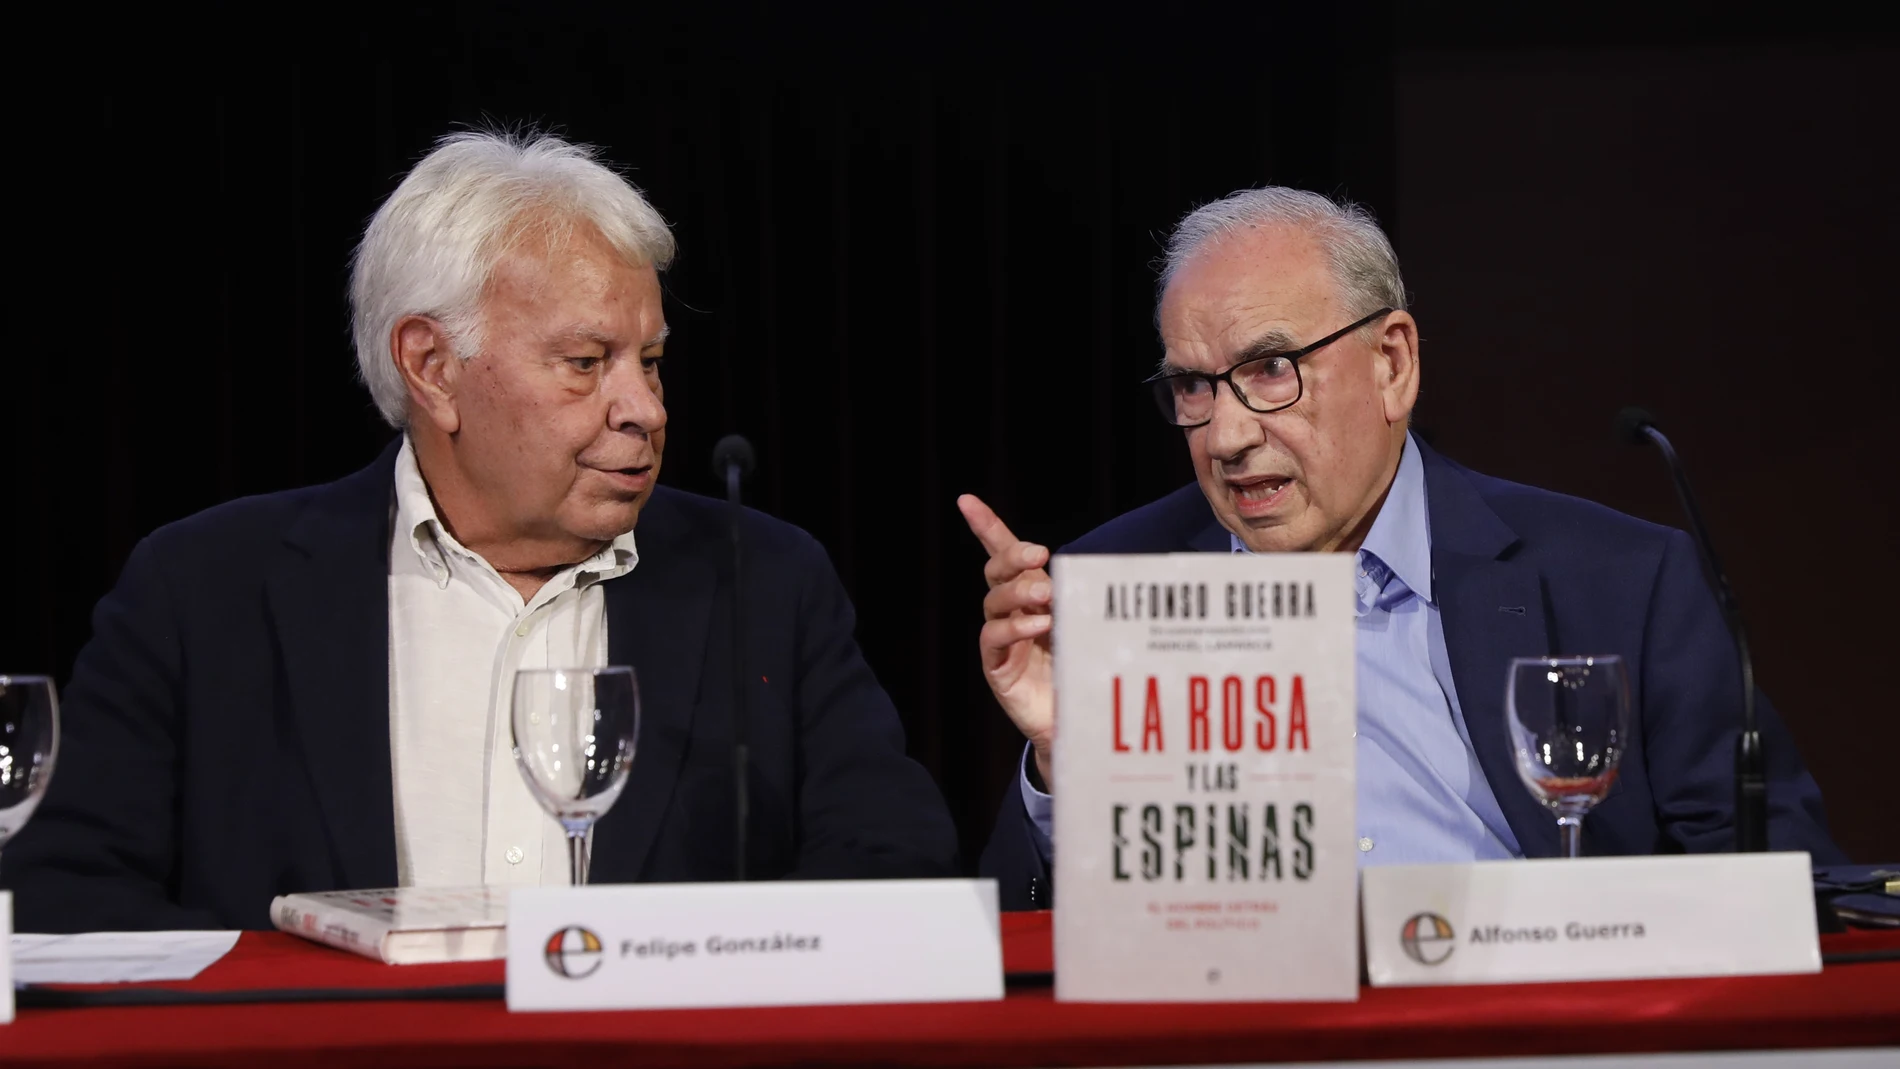 Presentación del libro de Alfonso Guerra, La Rosa y Las Espinas, con la presencia de Felipe Gónzalez. 